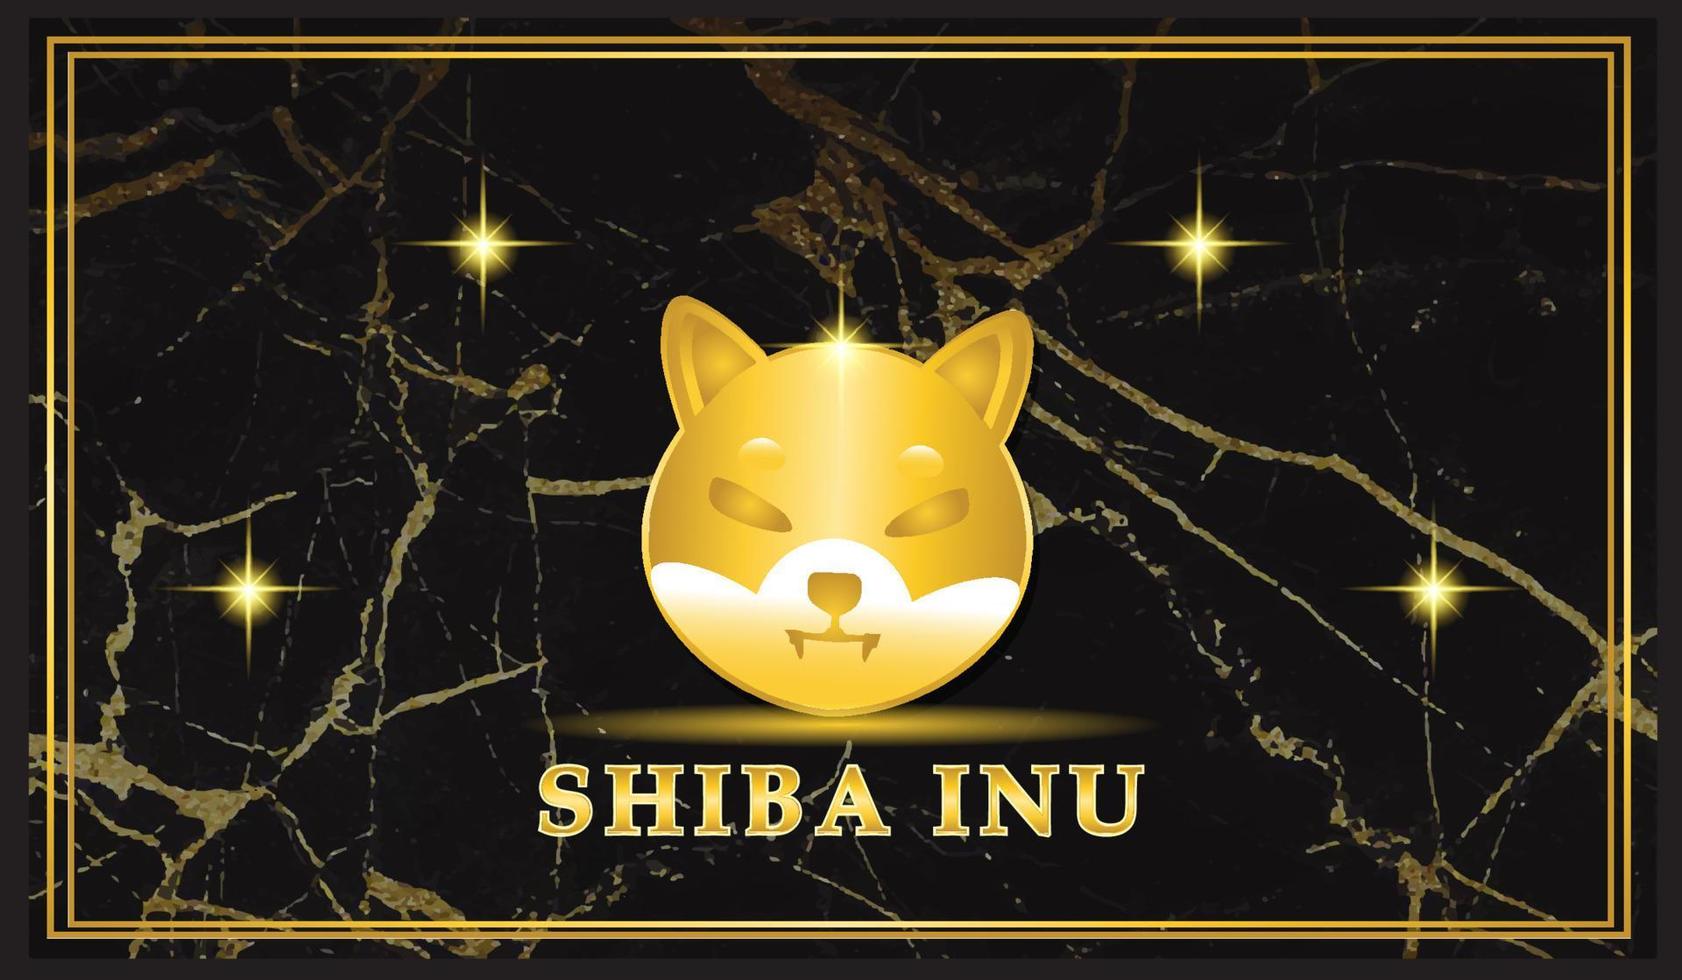 shiba inu kryptowährung auf marmorhintergrund vektor